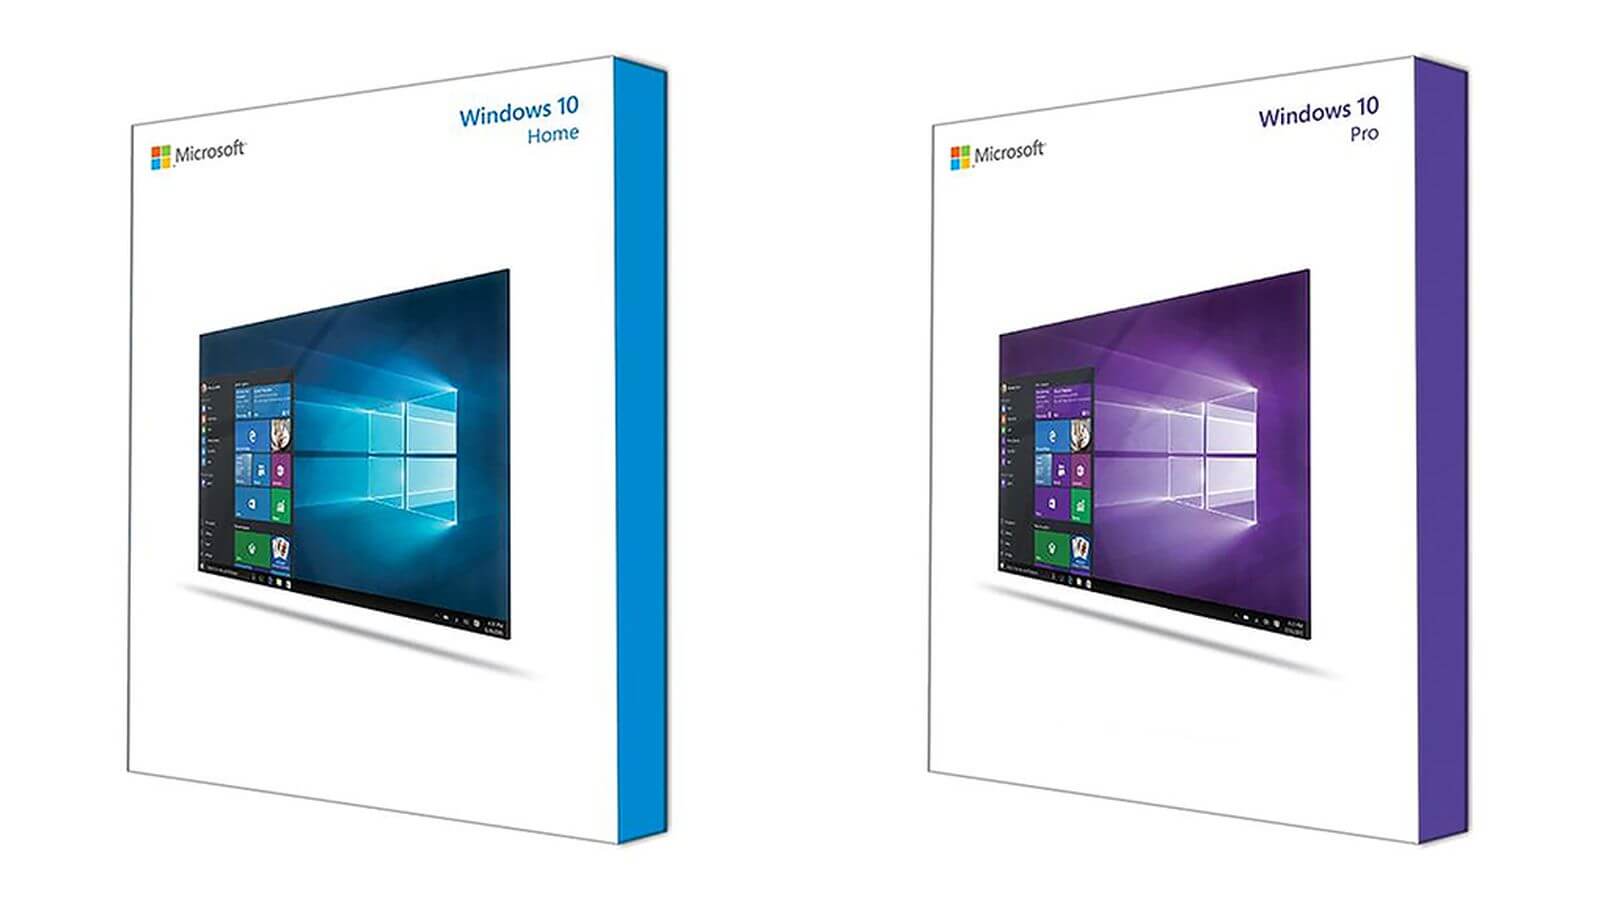 Como comprar una licencia de Windows 10 Pro barata?